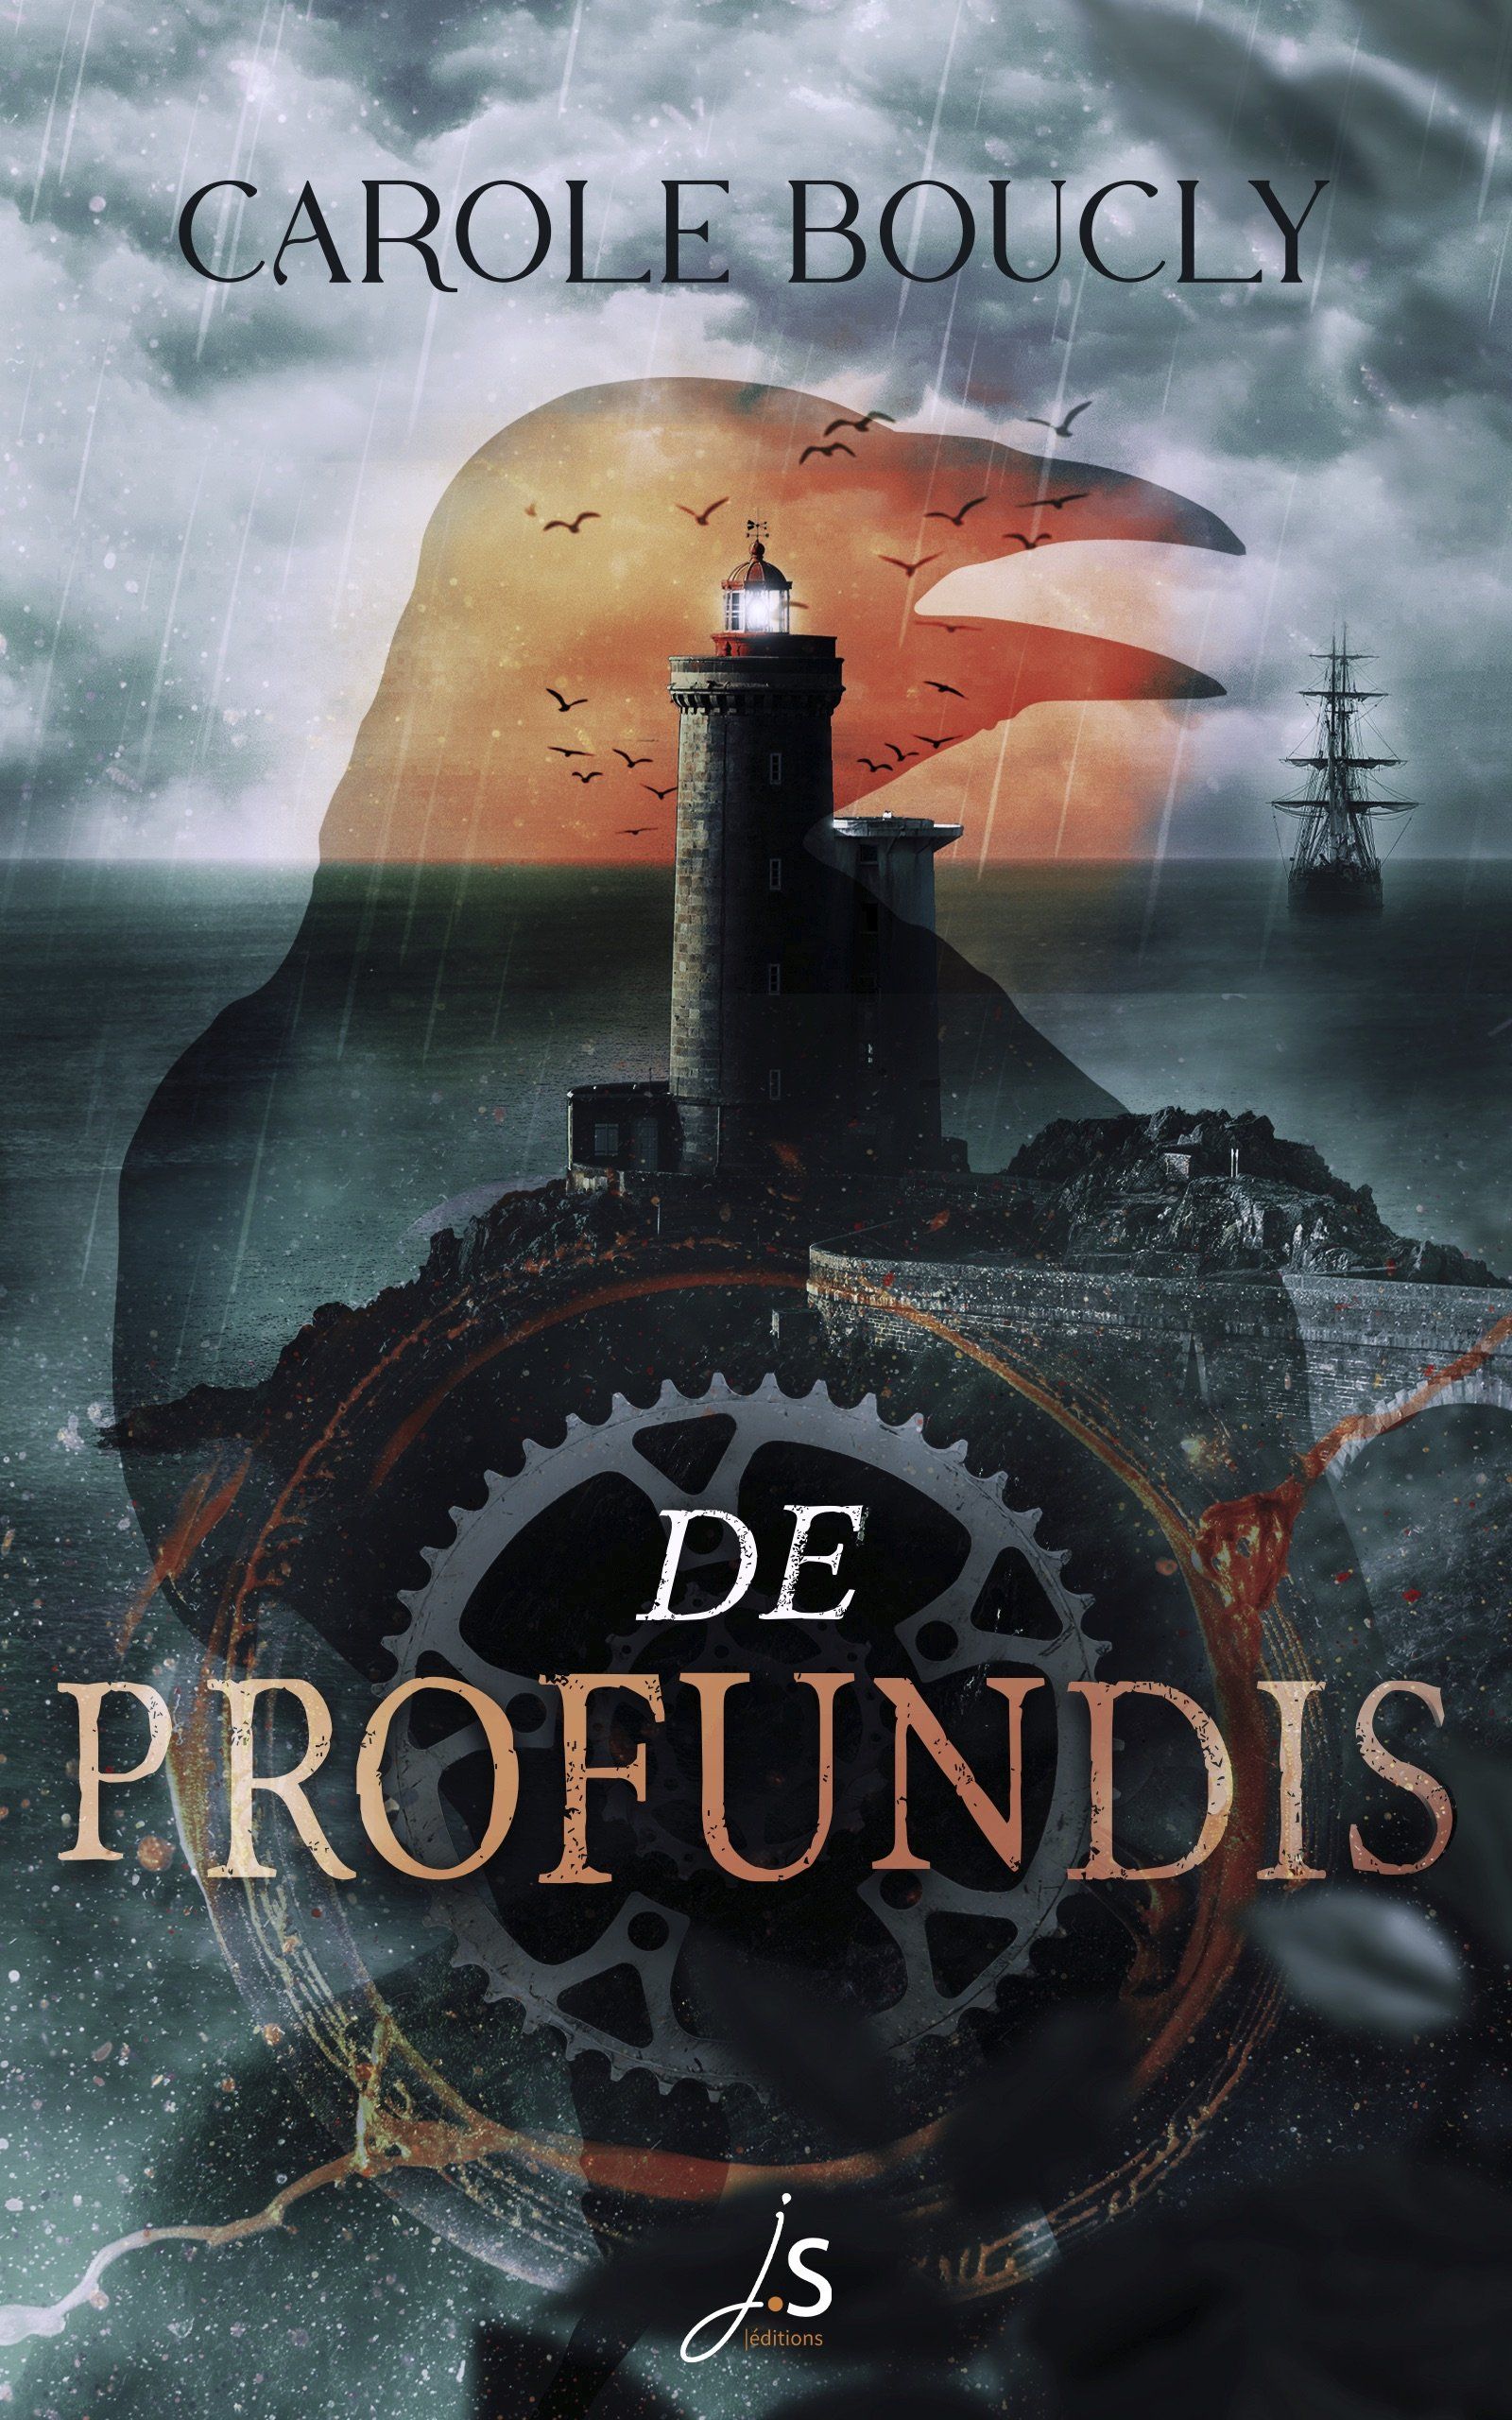 La couverture du thriller fantastique De profundis, de Carole Boucly. On y voit un phare breton dans une ambiance pesante et une silhouette de corbeau ainsi qu'un vieux bateau à voiles du 19e siècle